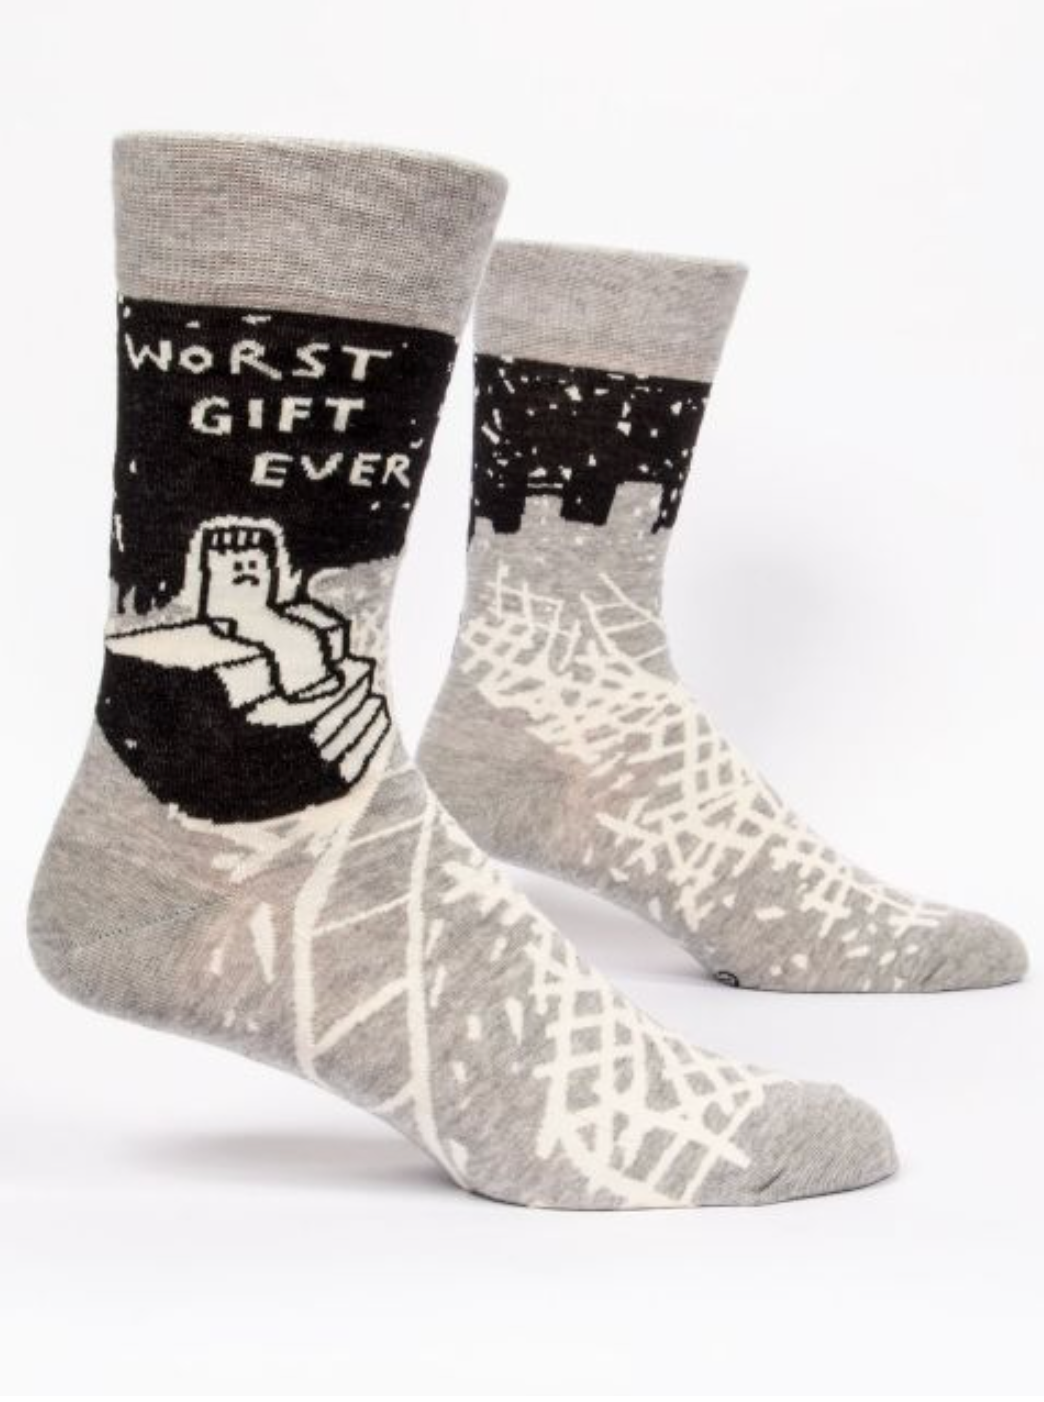 Worst Gift Ever Men's Socks